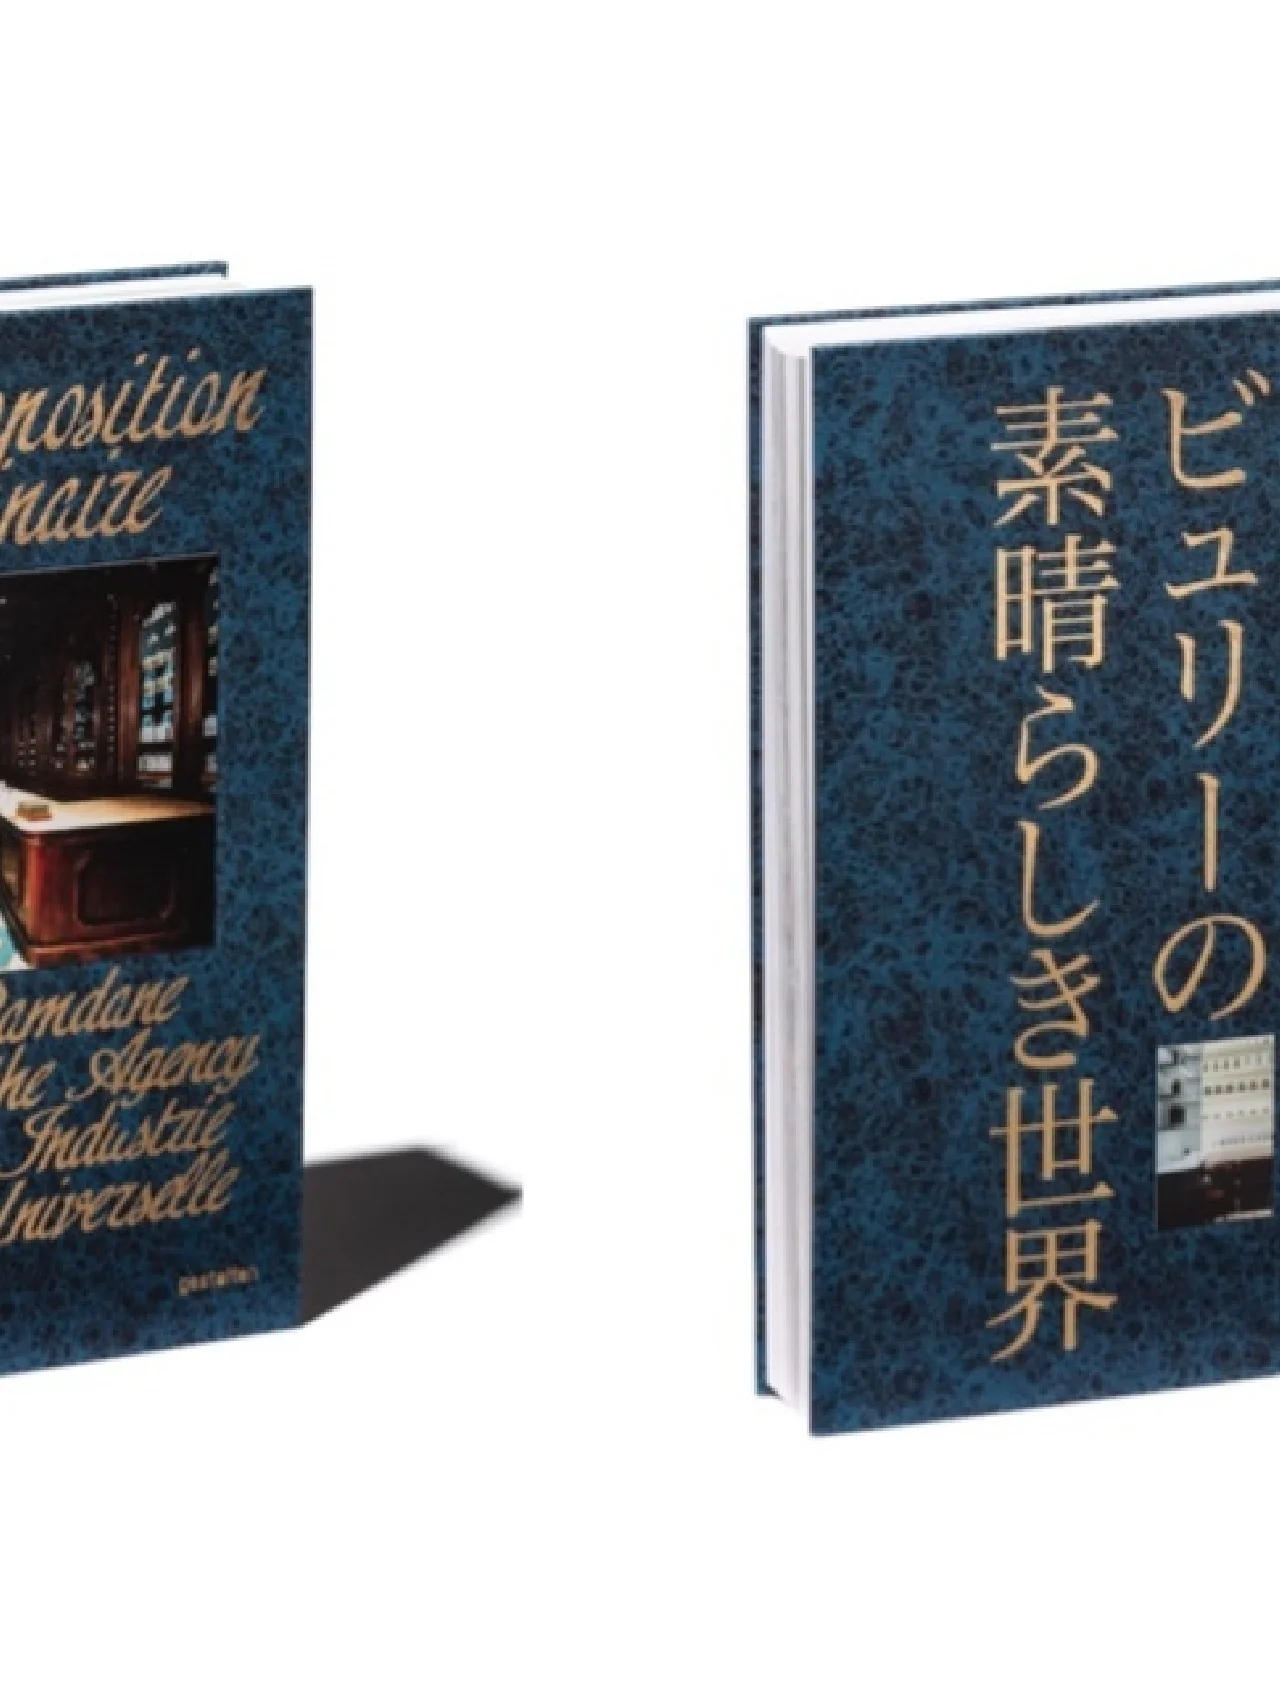 オフィシーヌ・ユニヴェルセル・ビュリーのすべてが1冊に。歴史を紐解く書籍『ザ・ビューティ・オブ・タイムトラベル』の日本語版が登場